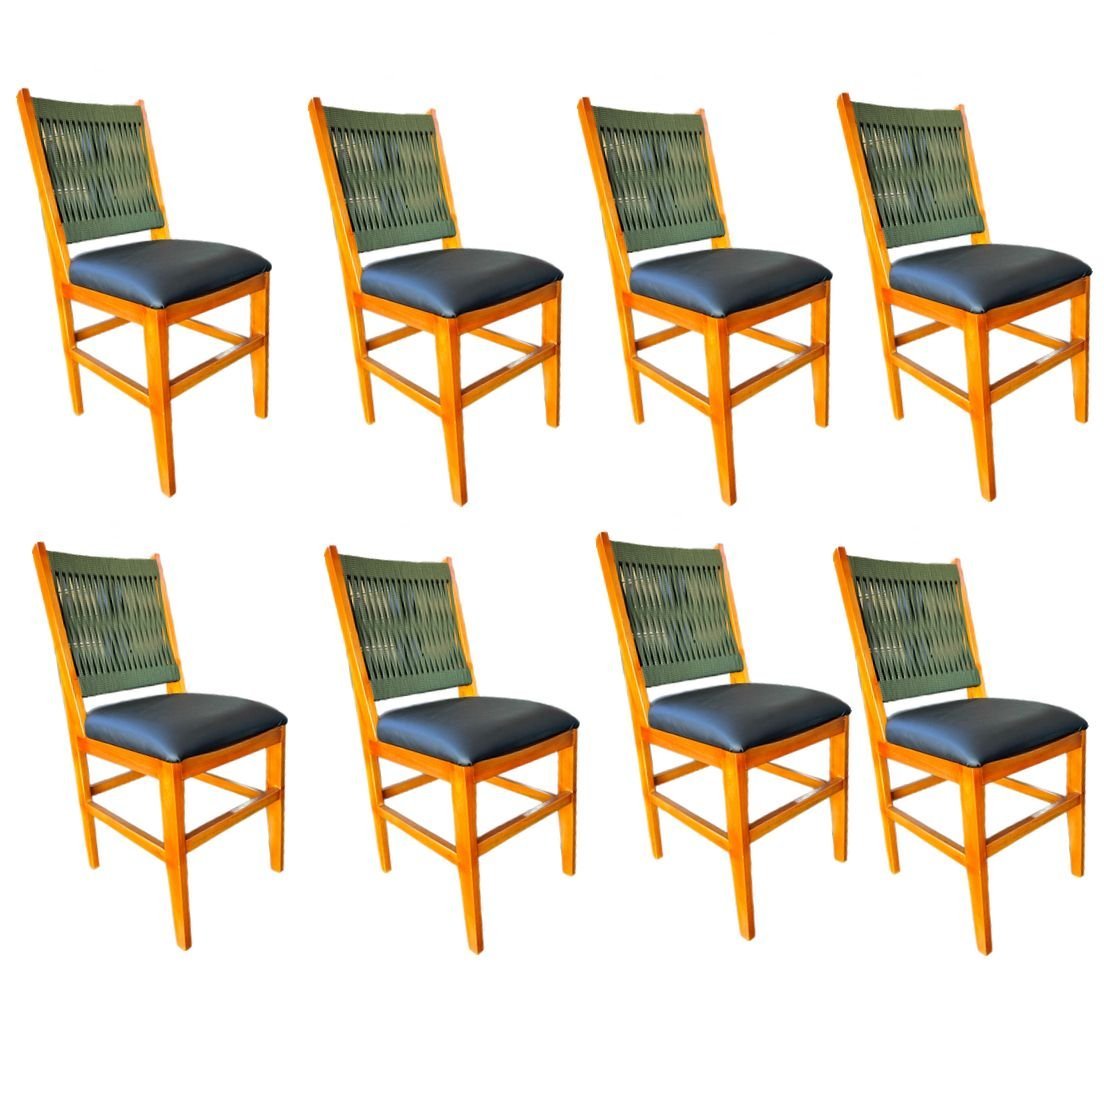 Kit 8 Cadeiras Ana Hickman com Corda Náutica e Estofado - 1